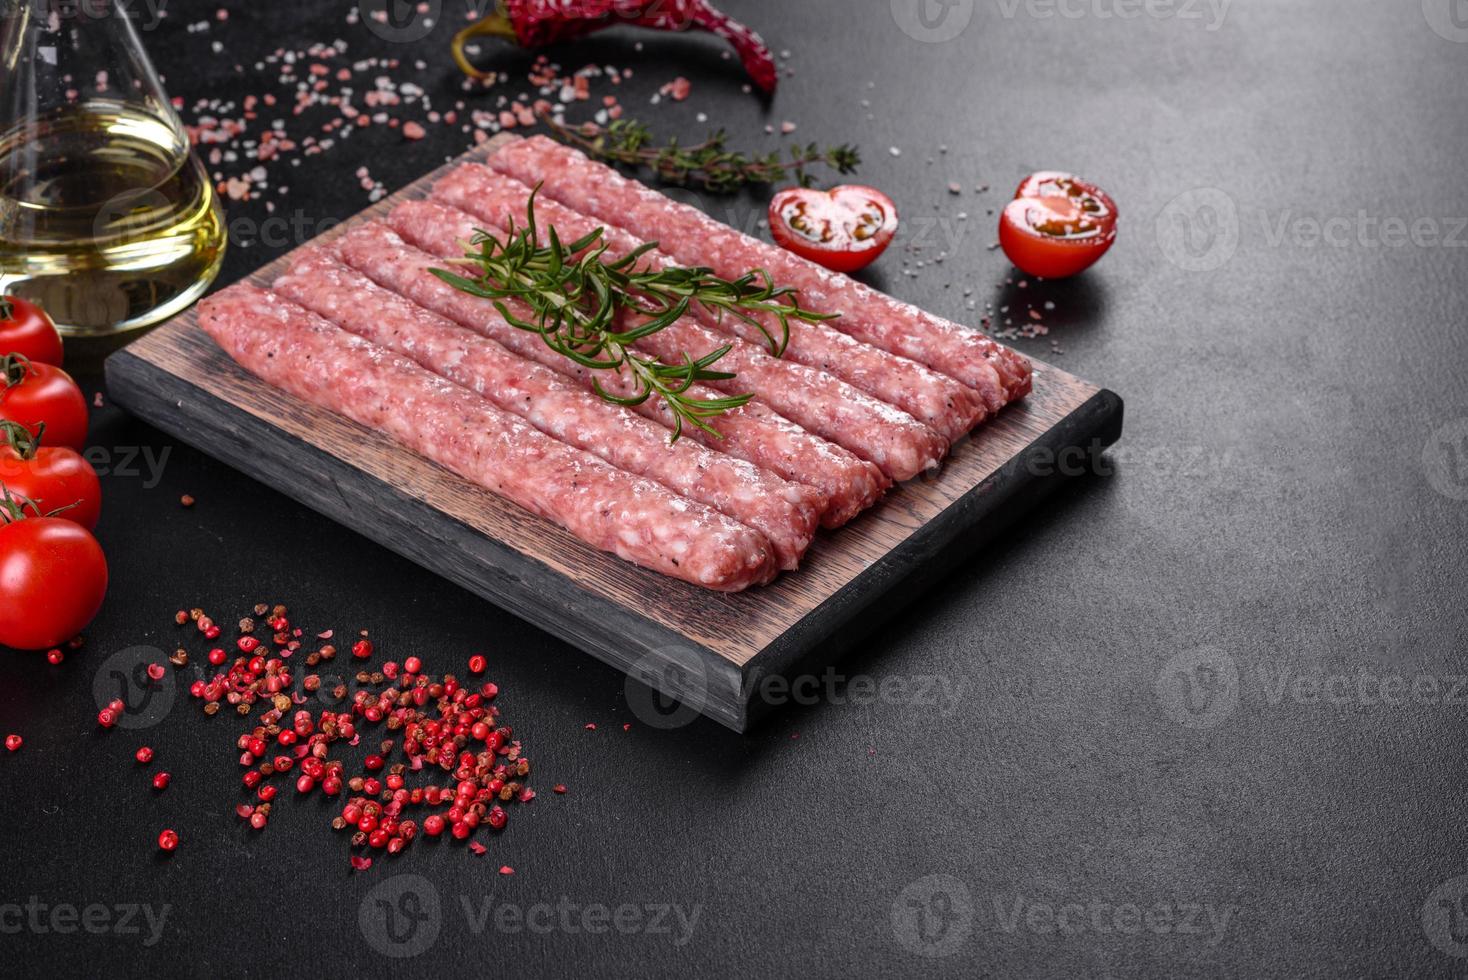 Salchichas de cerdo cruda fresca con especias sobre una tabla de cortar de madera foto